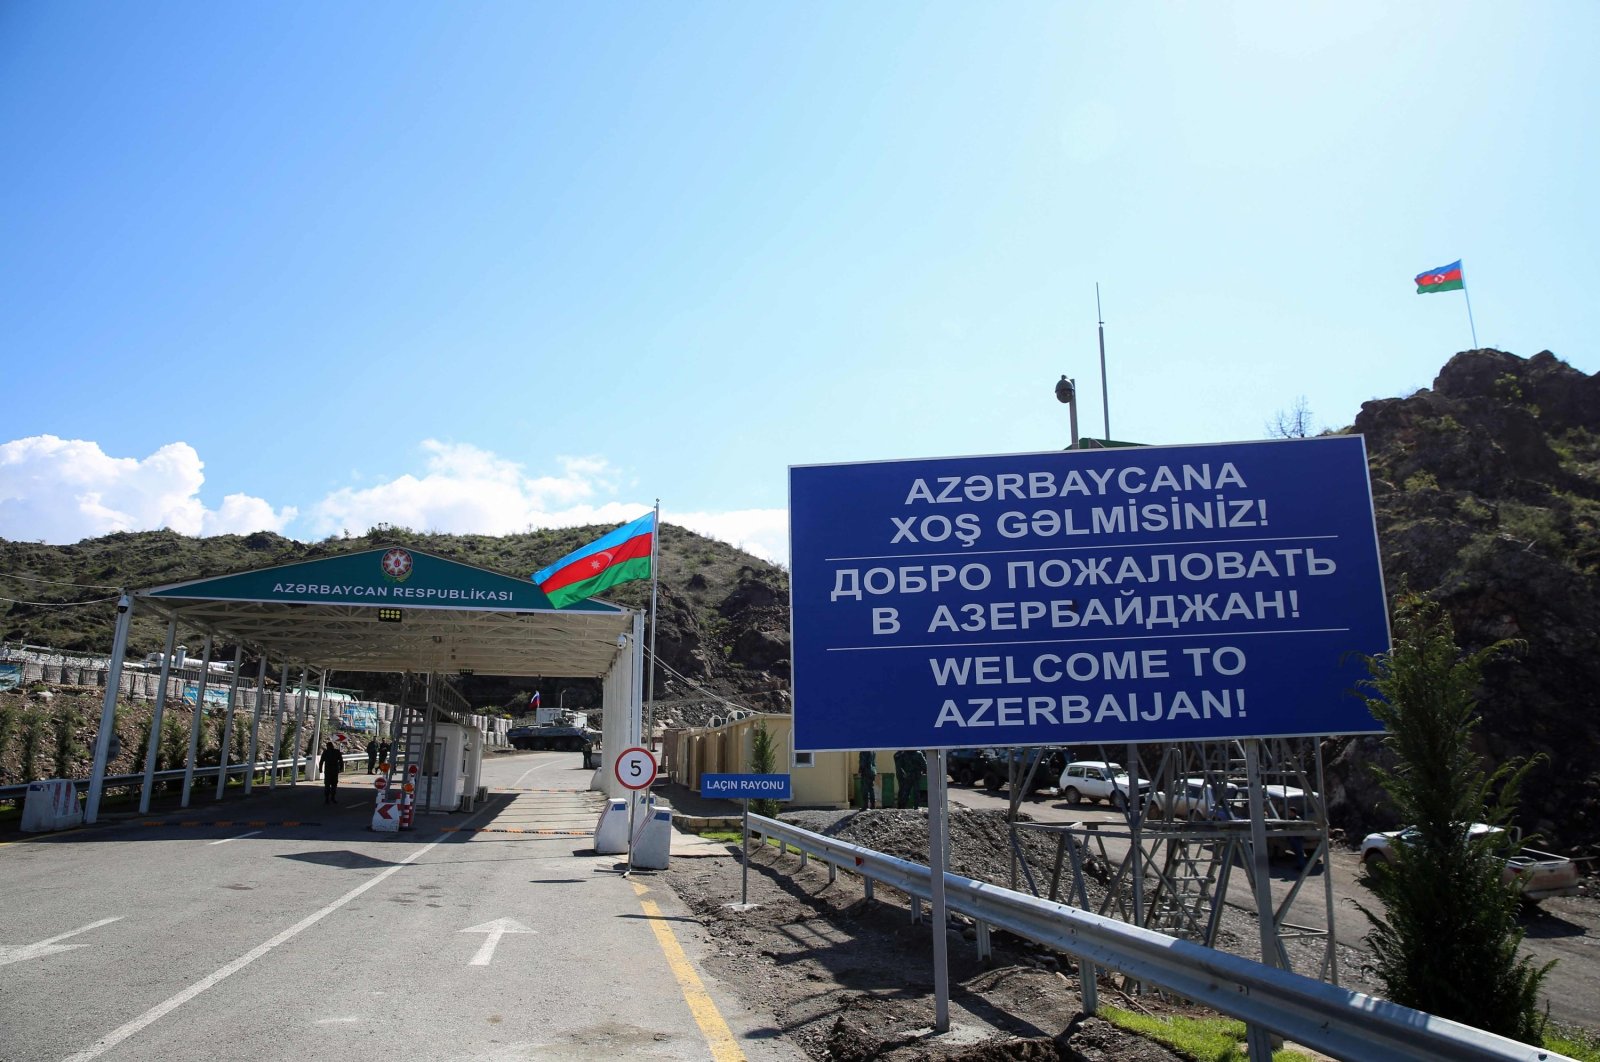 Azerbaijan dapat memberikan amnesti kepada orang Armenia Karabakh